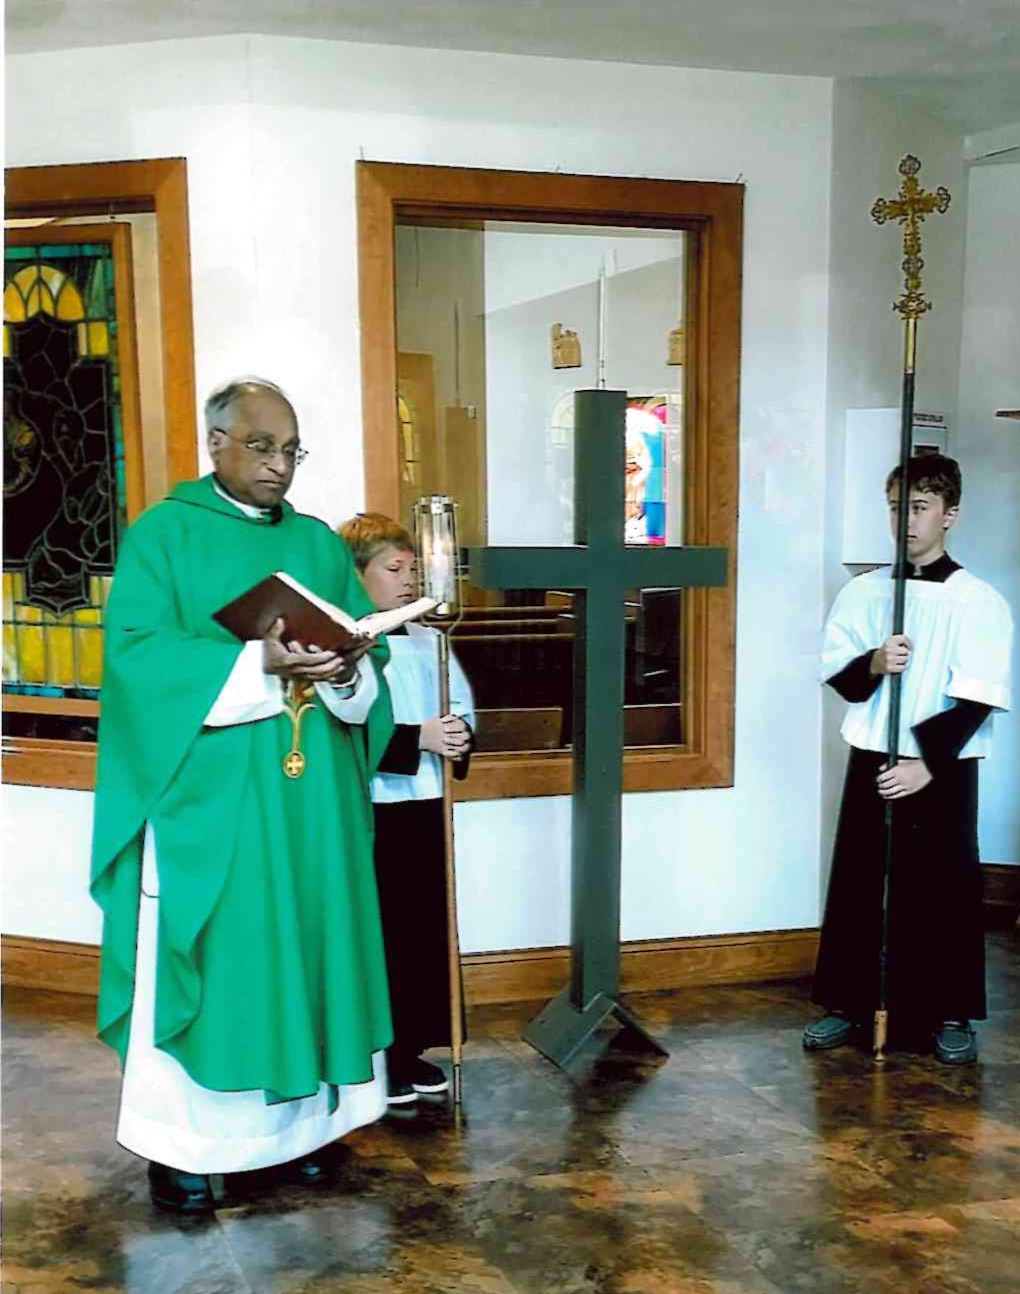 Fr. John Kizhakedan blesses the new cross